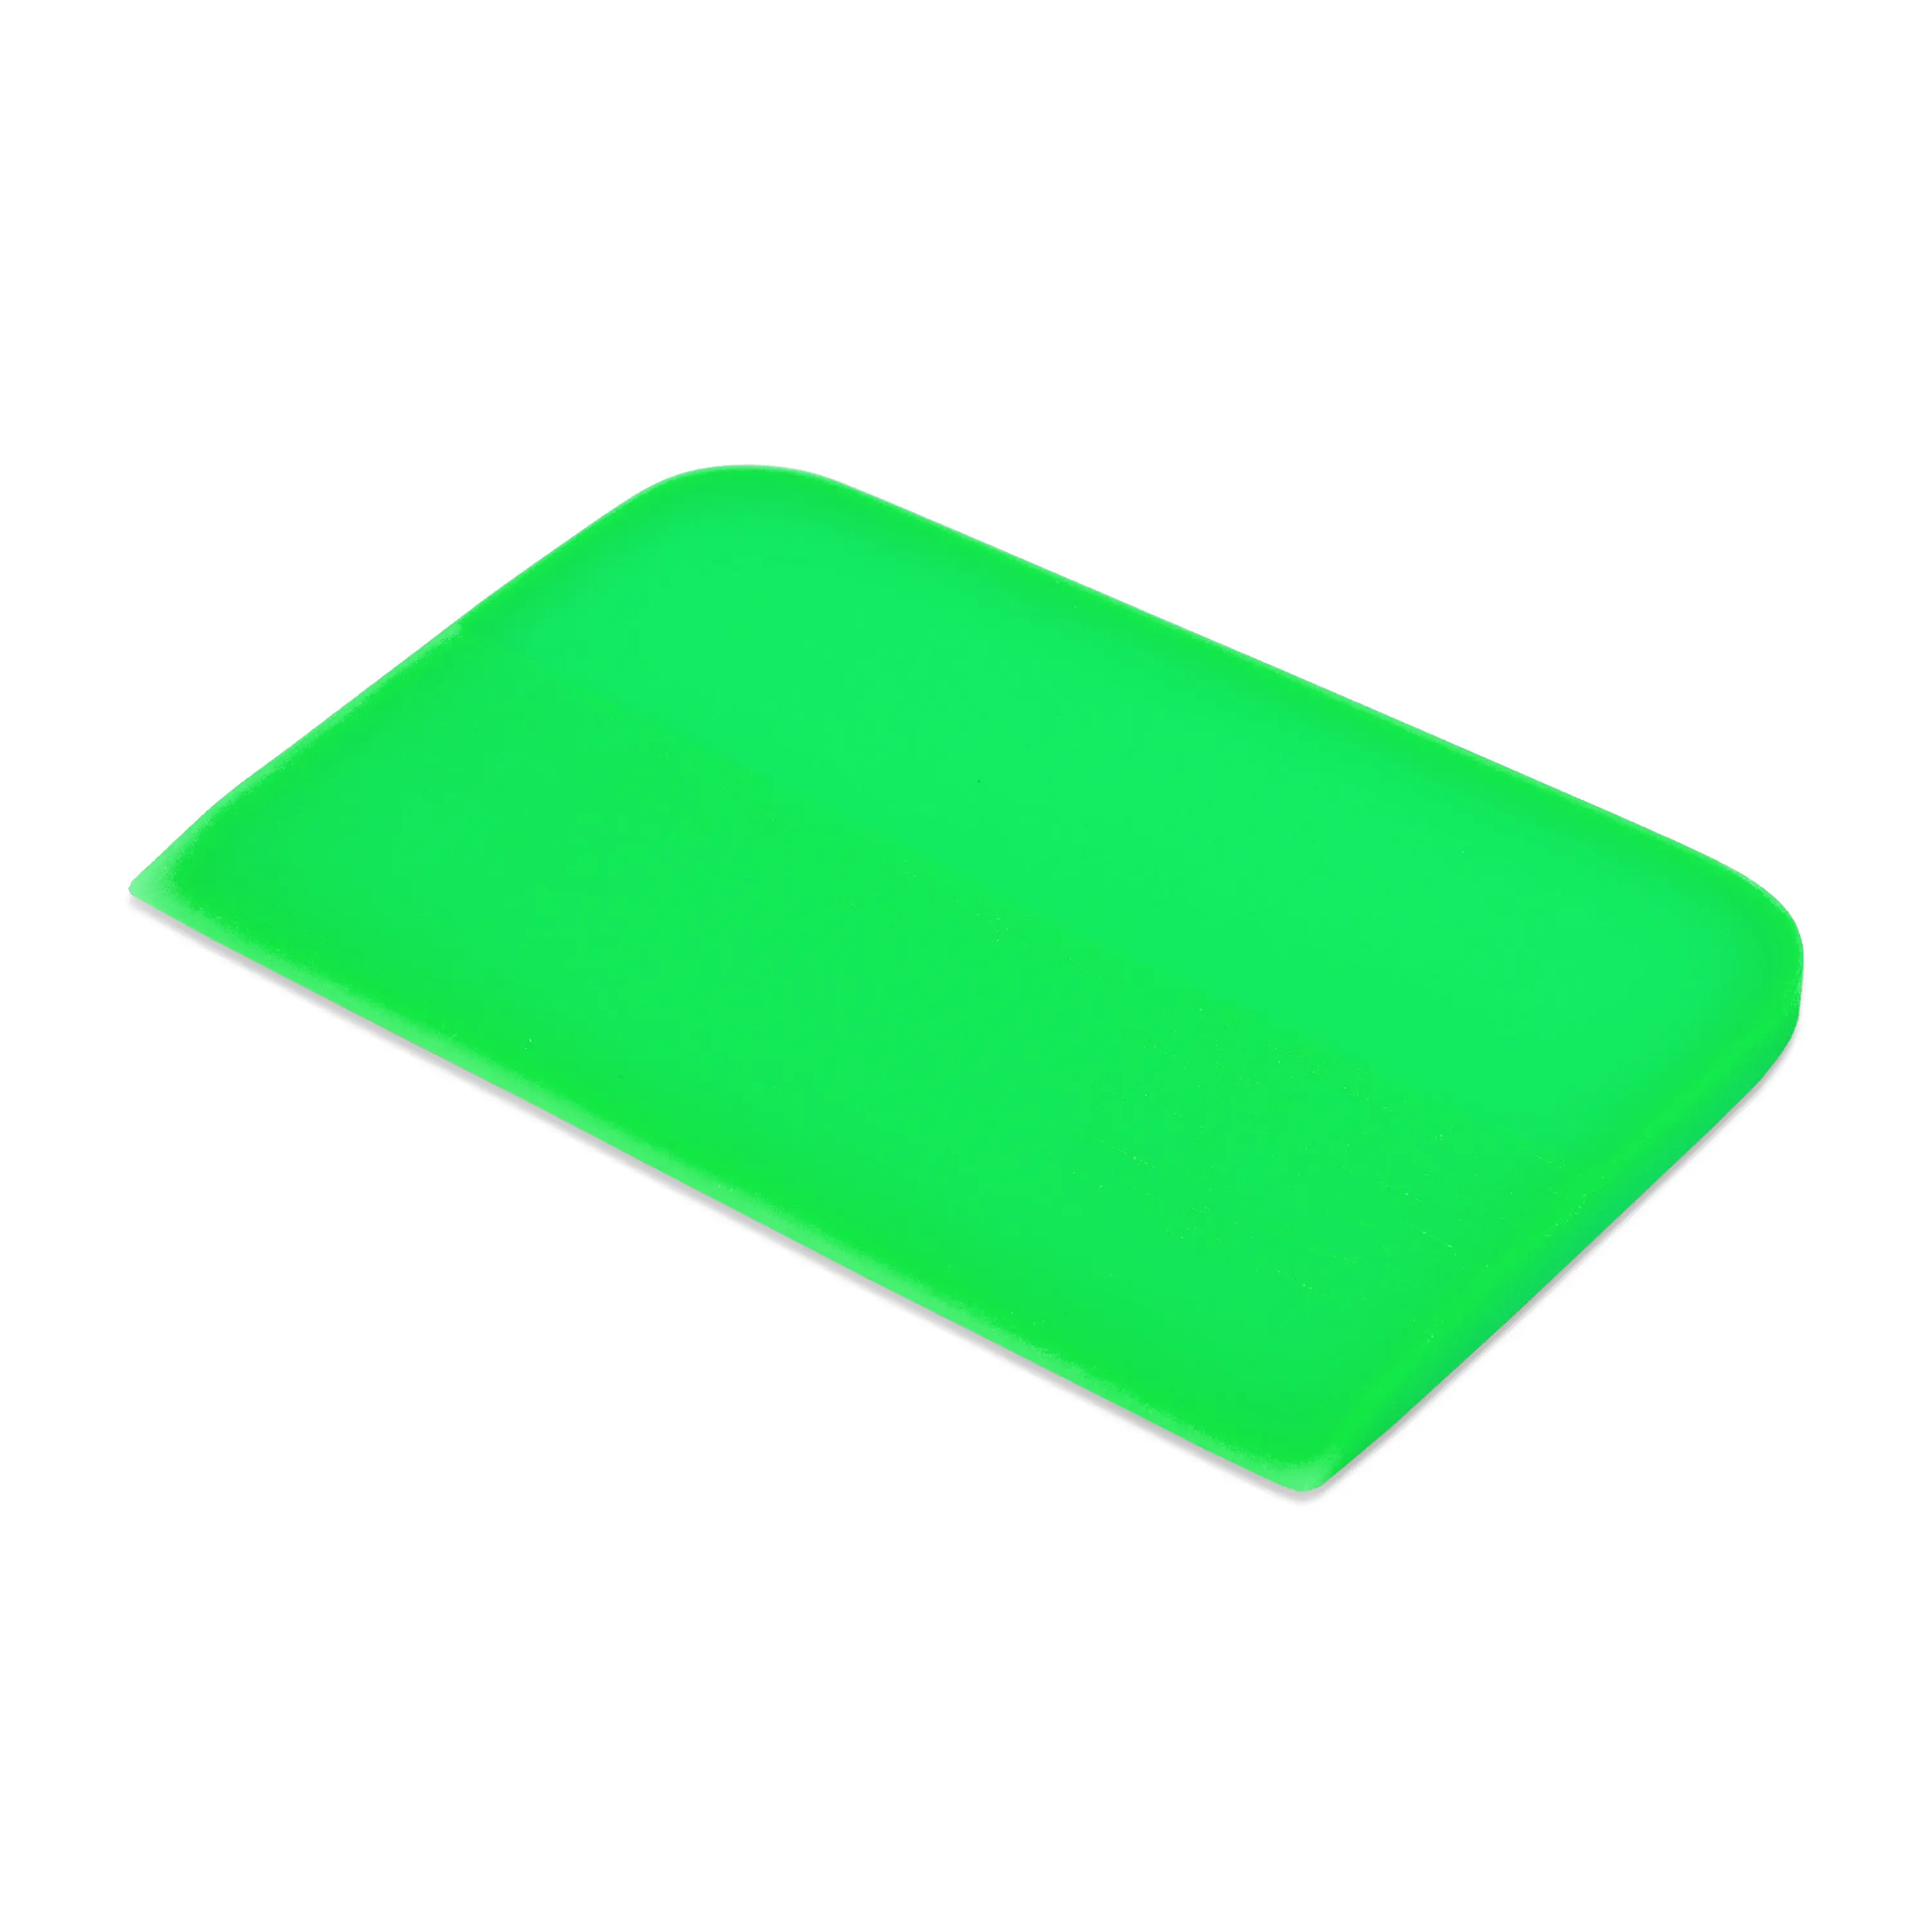 Polyurethane green film squeeging tool Froggy Slider, 0,6x12x7,5 cm